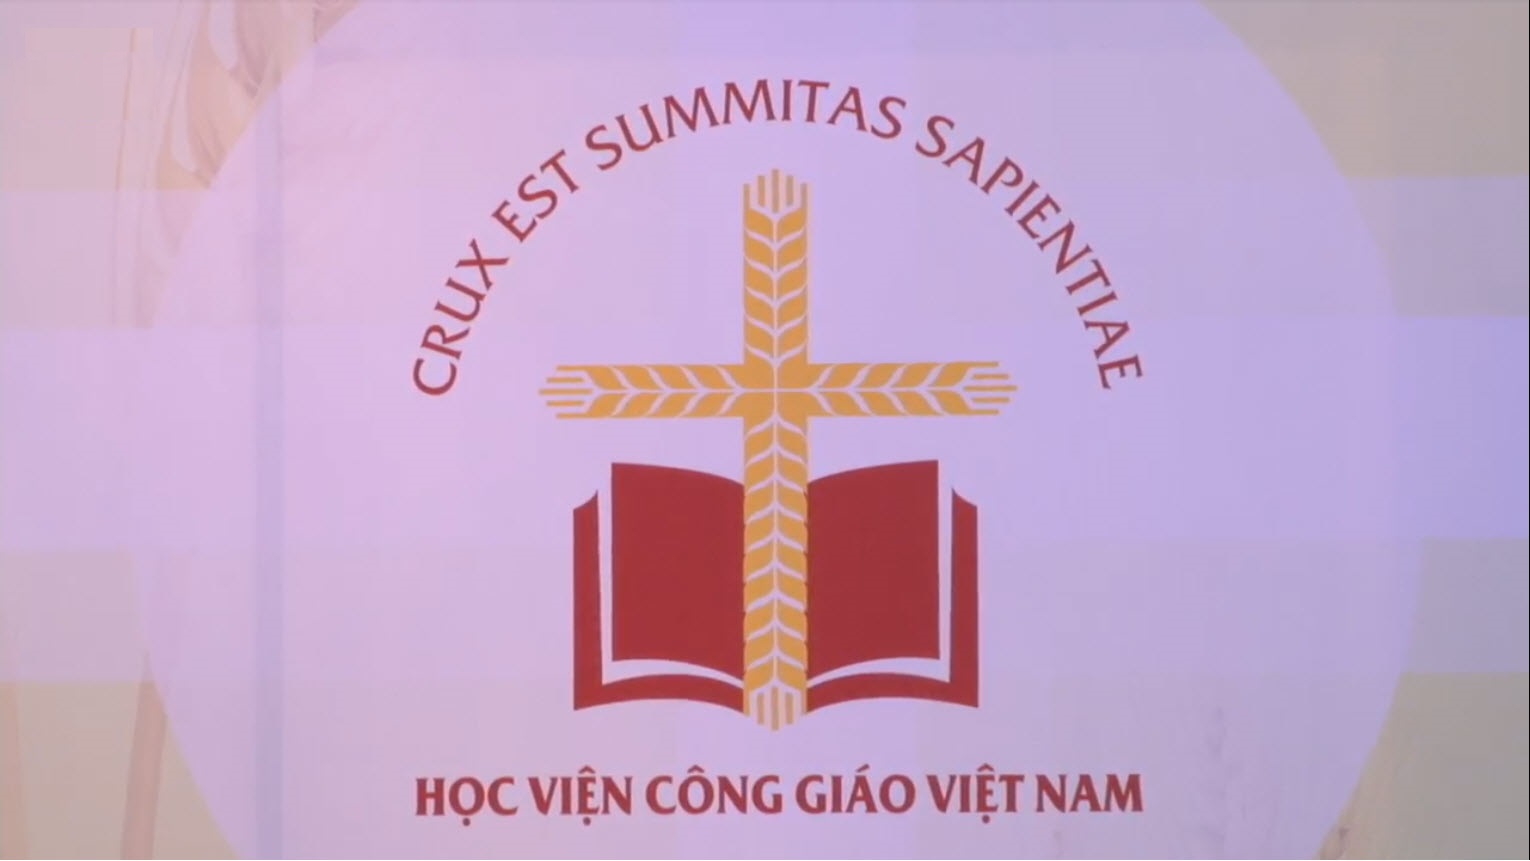 Học viện Công giáo Việt Nam: thông báo tuyển sinh năm học 2020-2021